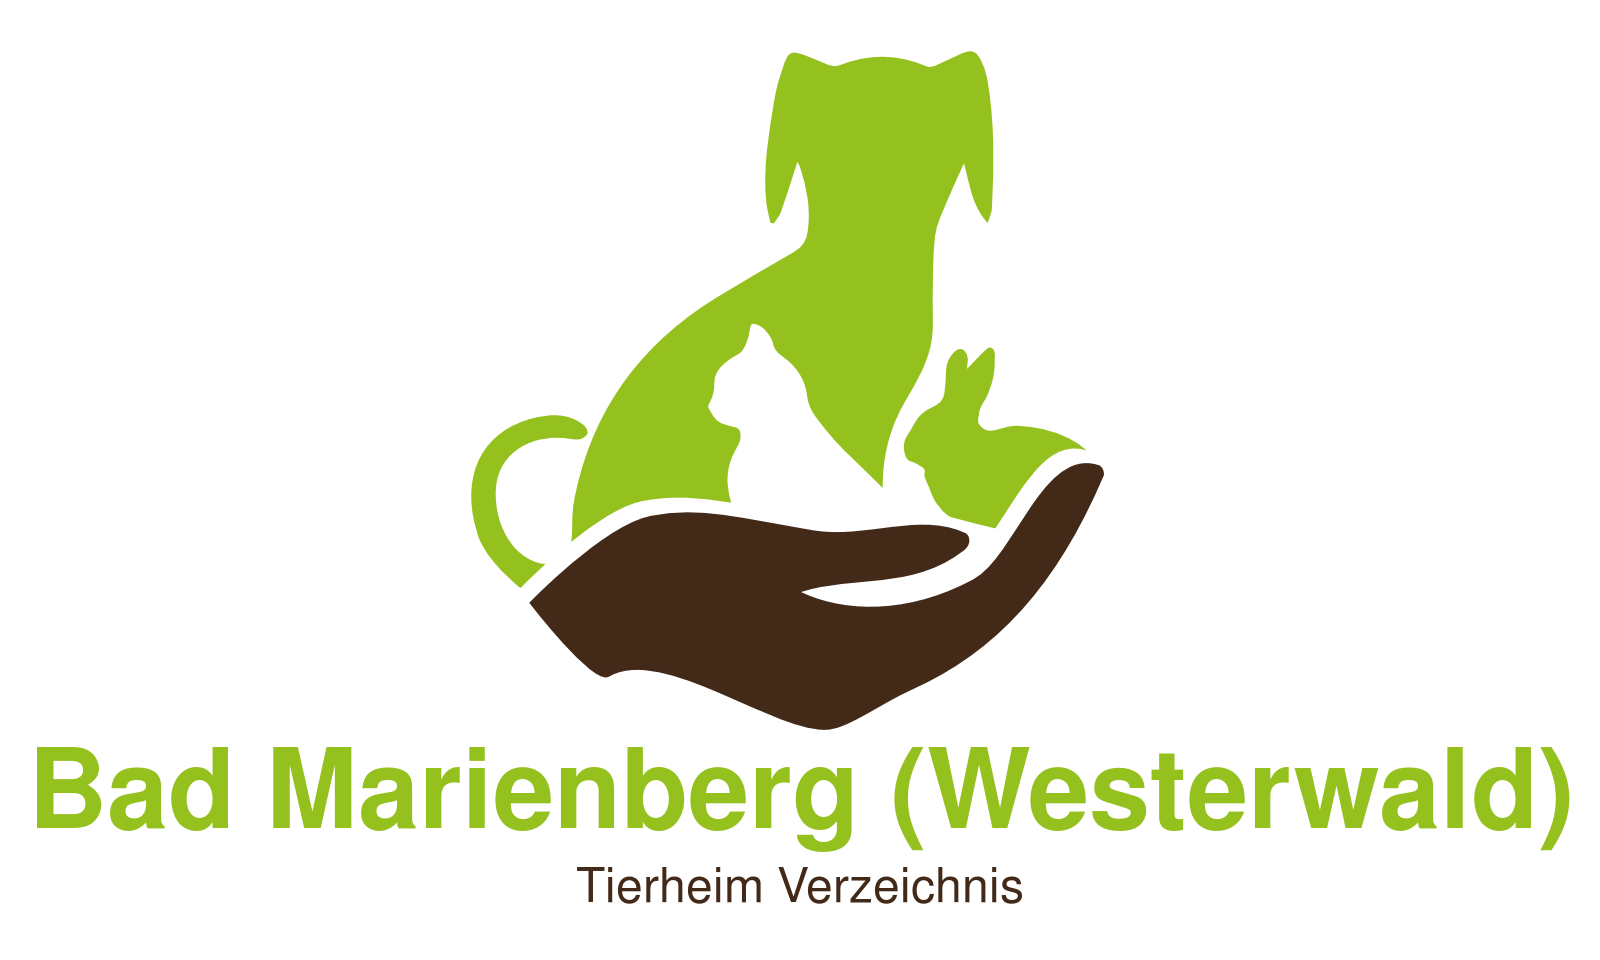 Tierheim Bad Marienberg (Westerwald)